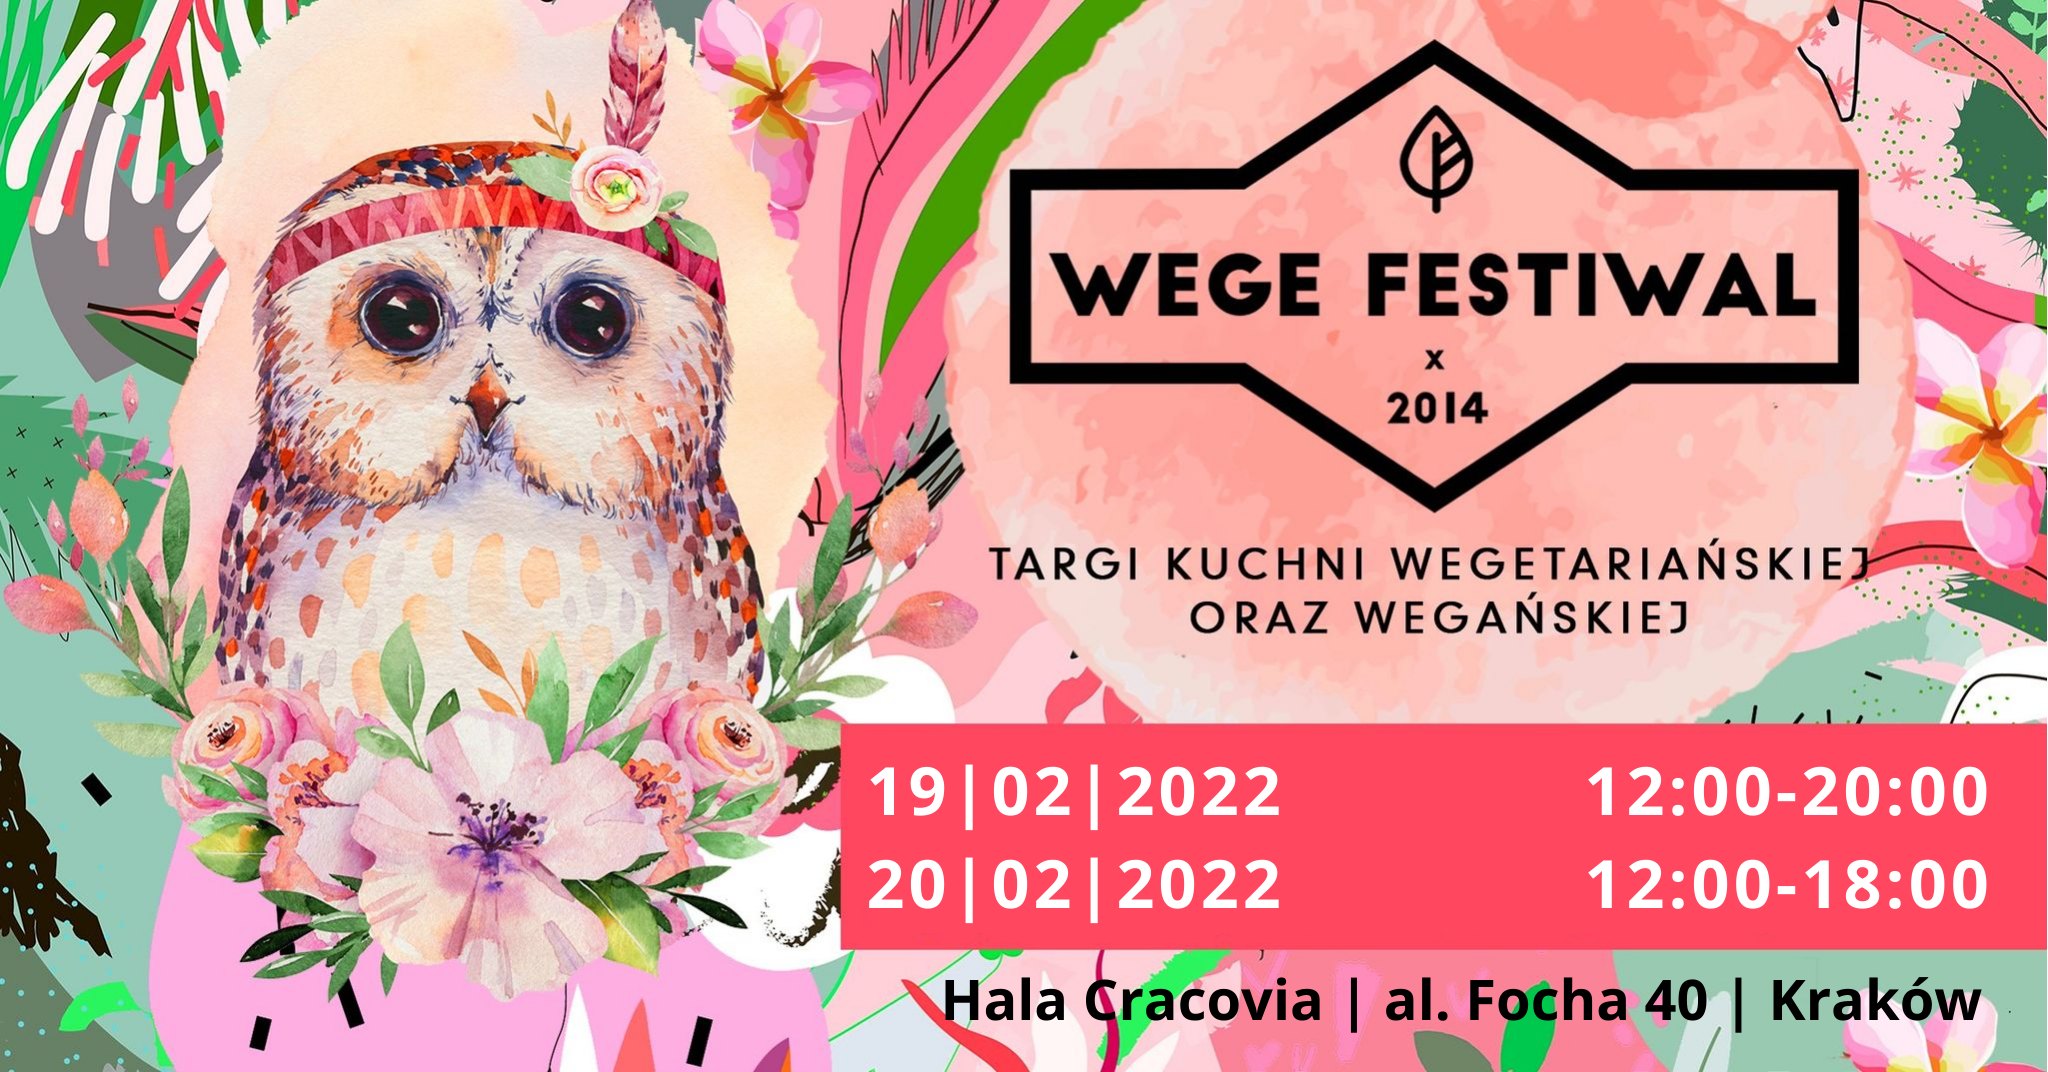 Już 19-20 lutego w Krakowie odbędzie się święto wszystkich wegetarian - Wege Festiwal!